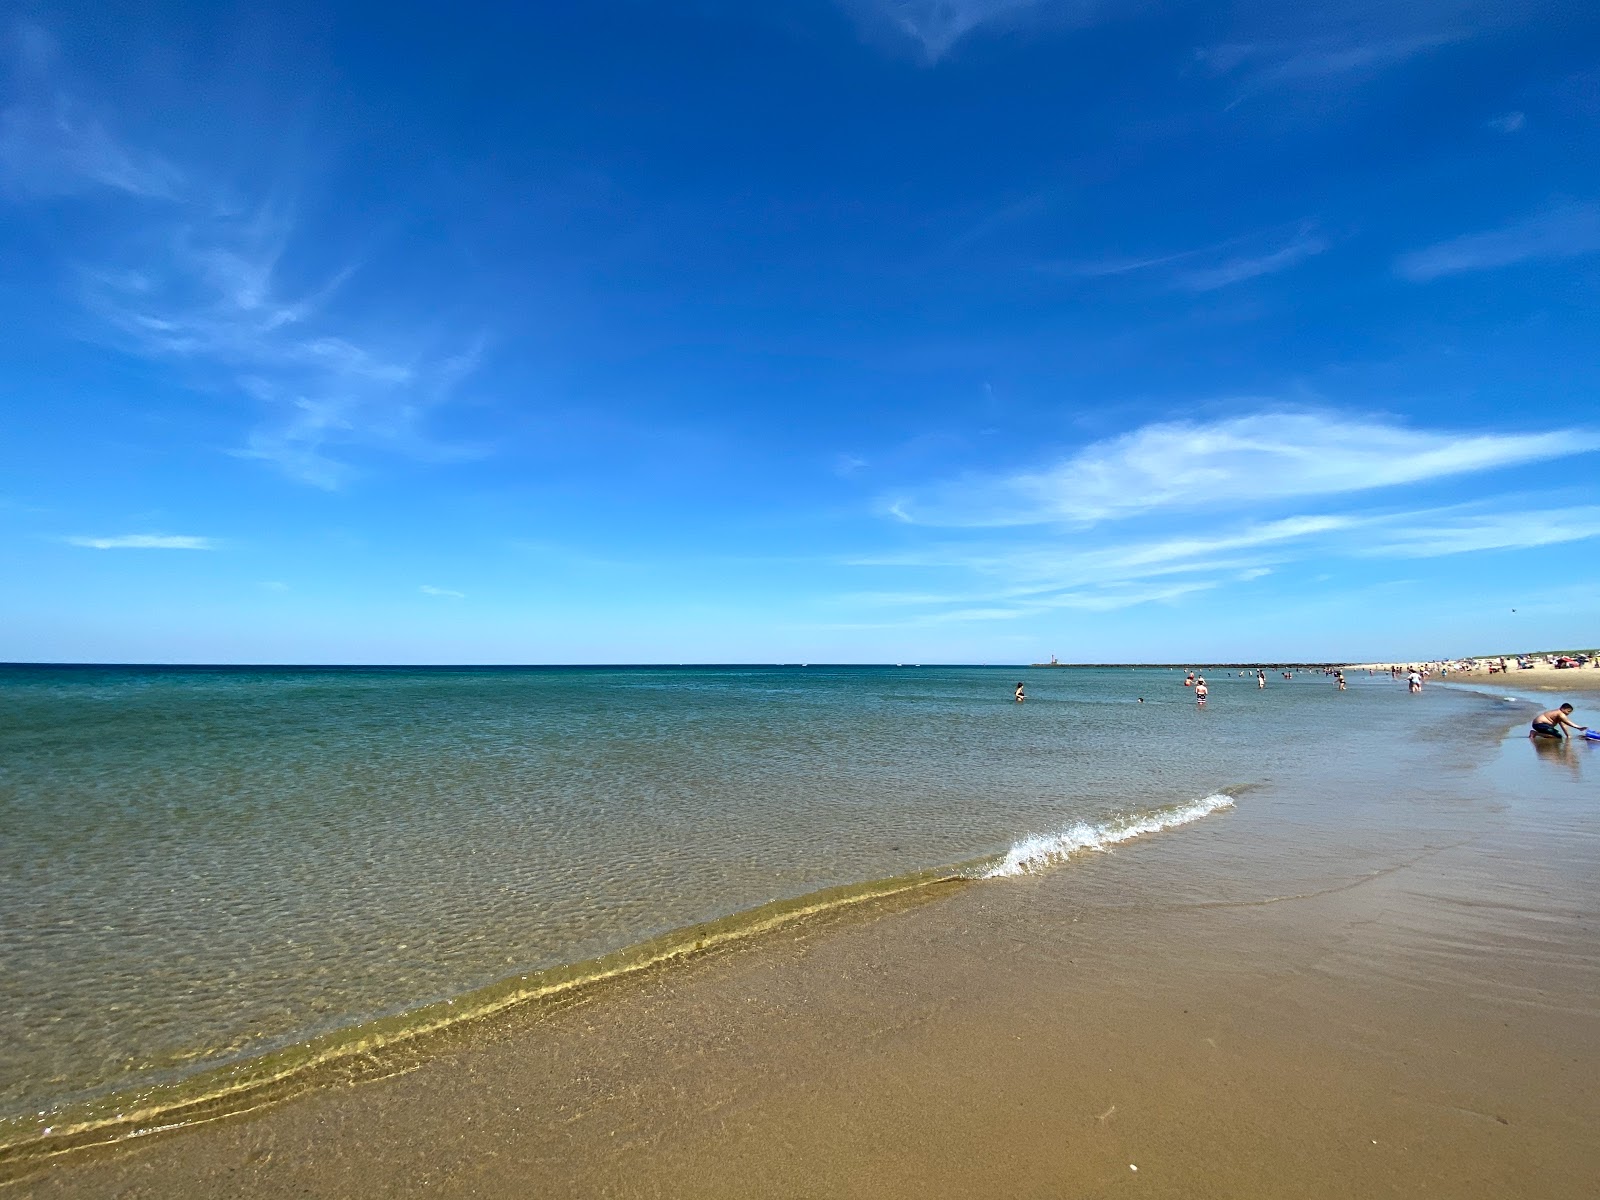 Fotografie cu Scusset beach cu o suprafață de nisip strălucitor